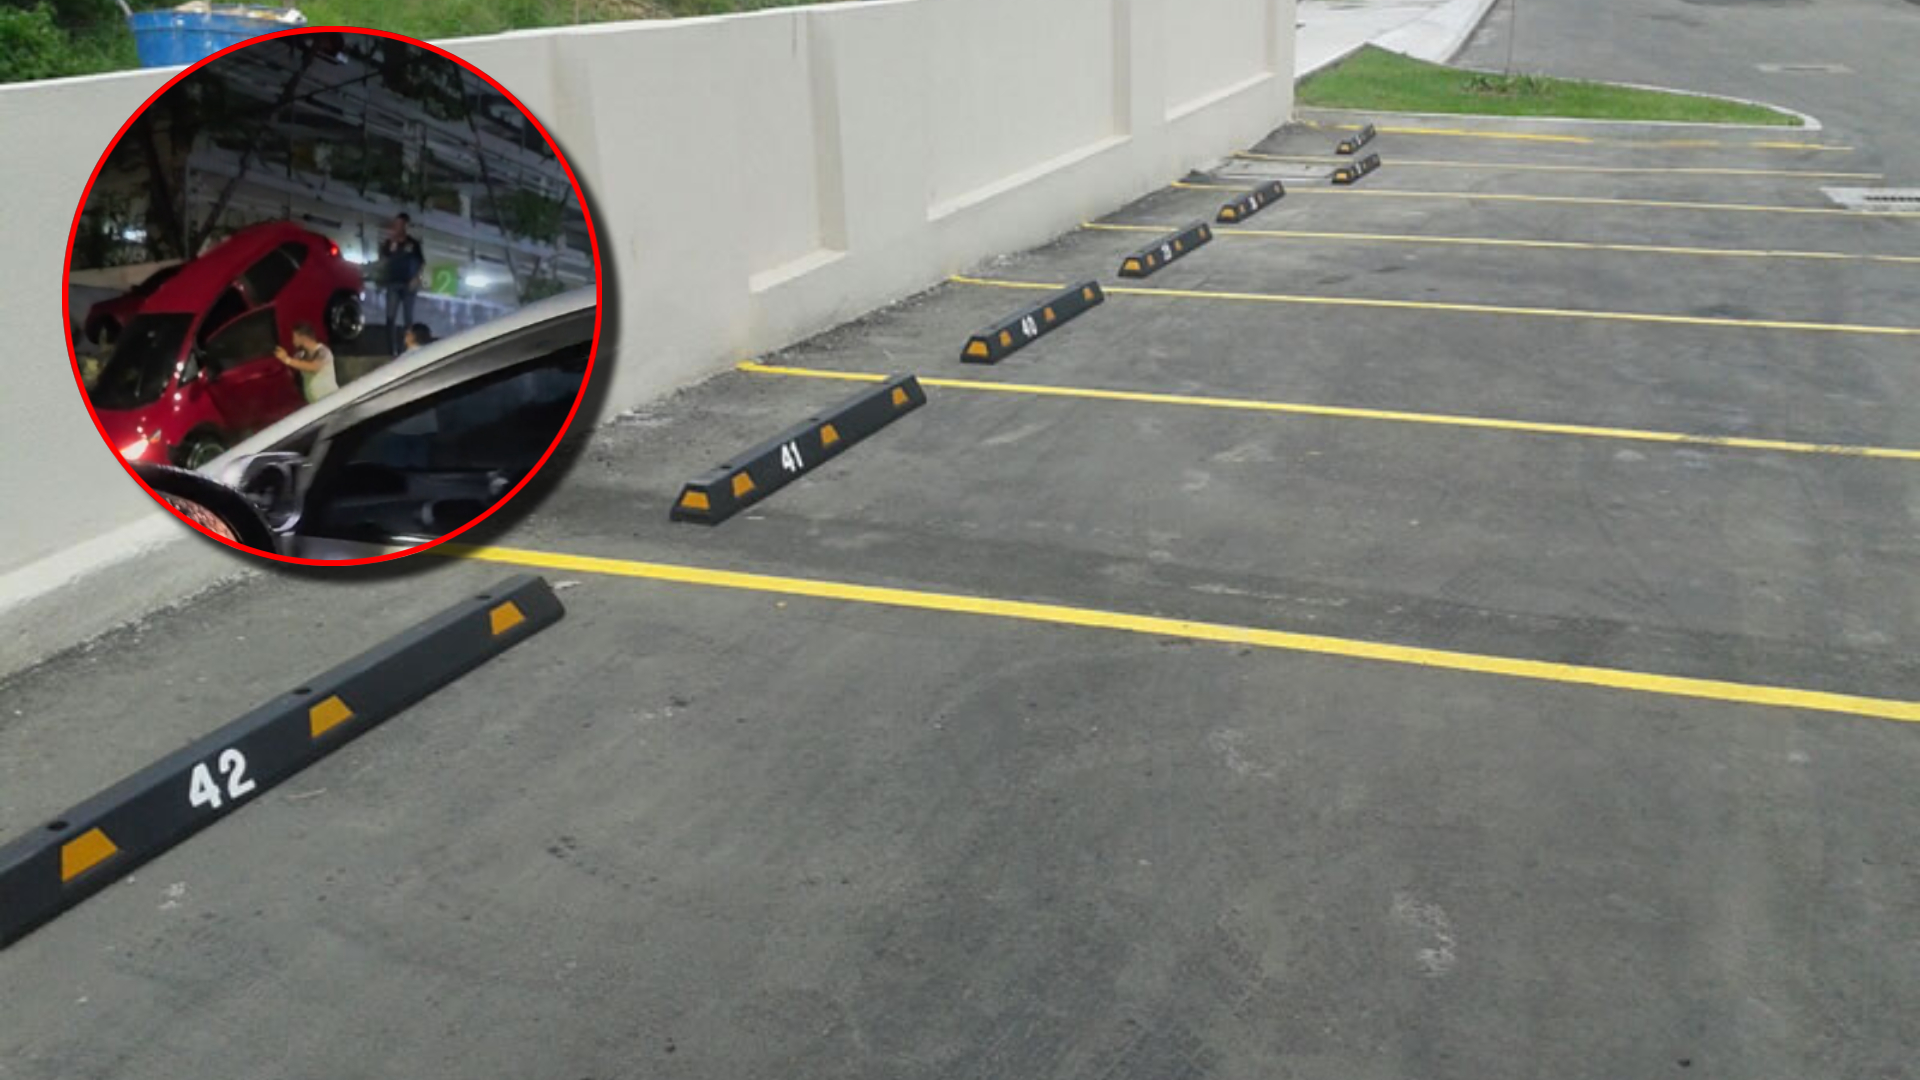 “Ahí no se puede parquear”: Conductor se estrella en estacionamiento en Tegucigalpa (VIDEO)